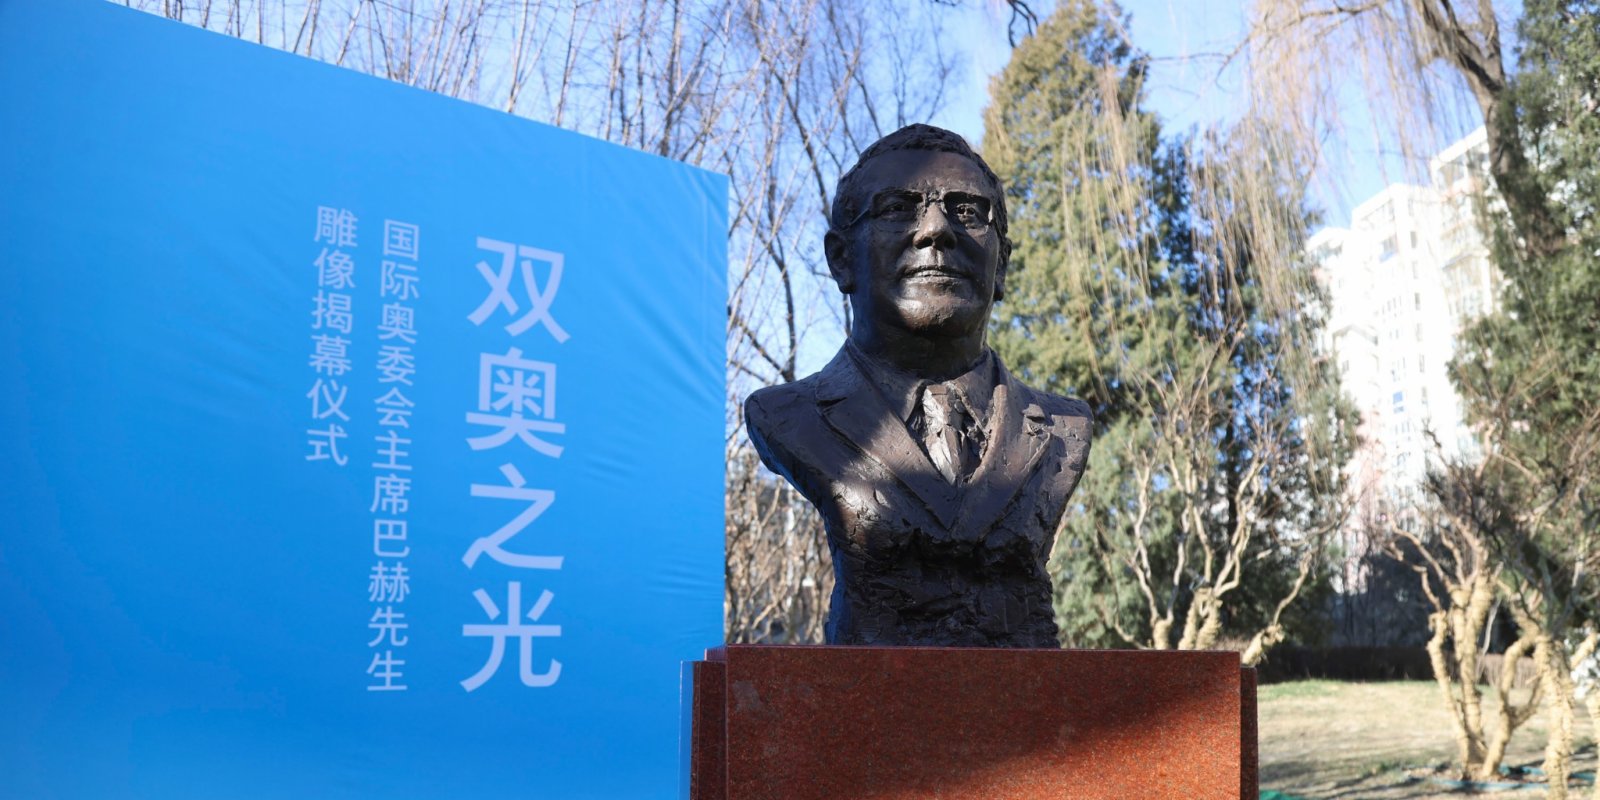 國際奧委會主席巴赫雕像北京亮相